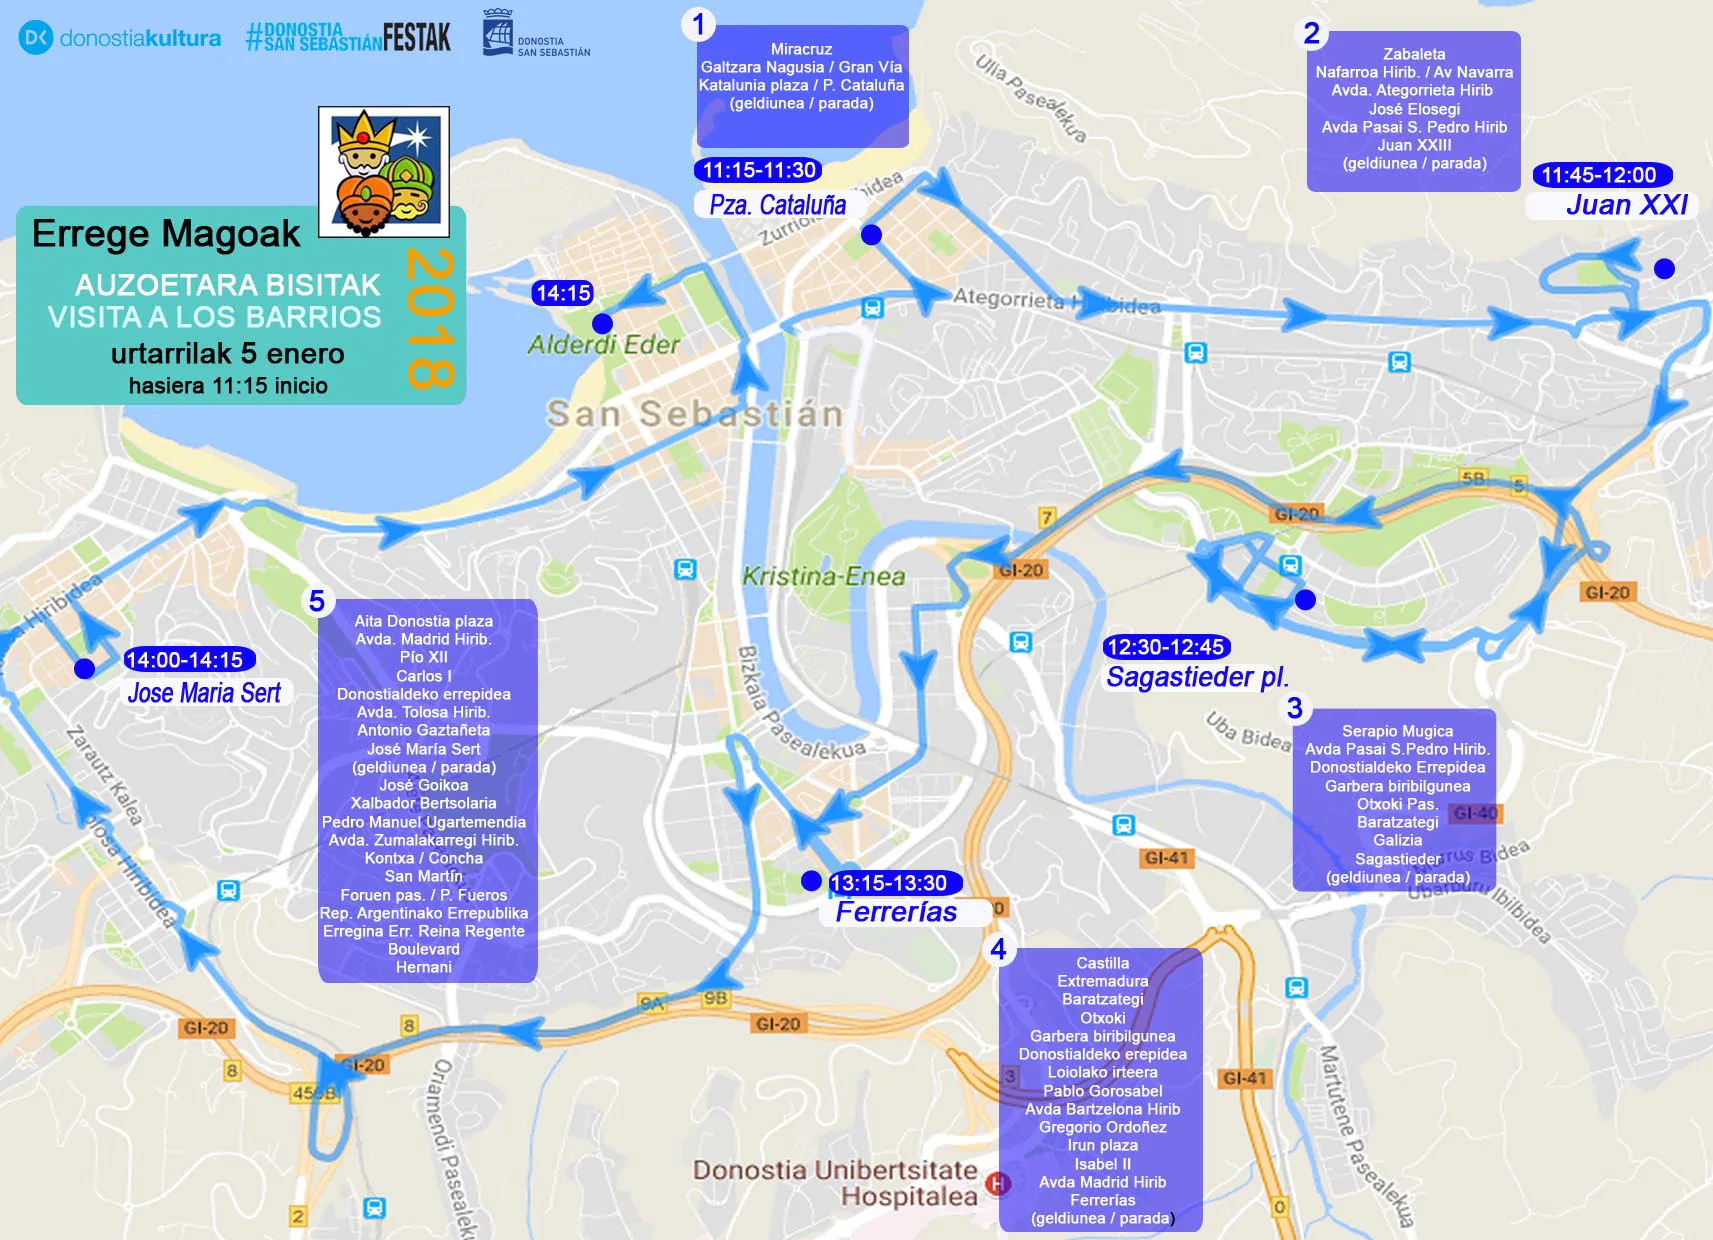 Gráfico. Recorrido y horarios: así será el itinerario de los Reyes Magos en Donostia. 